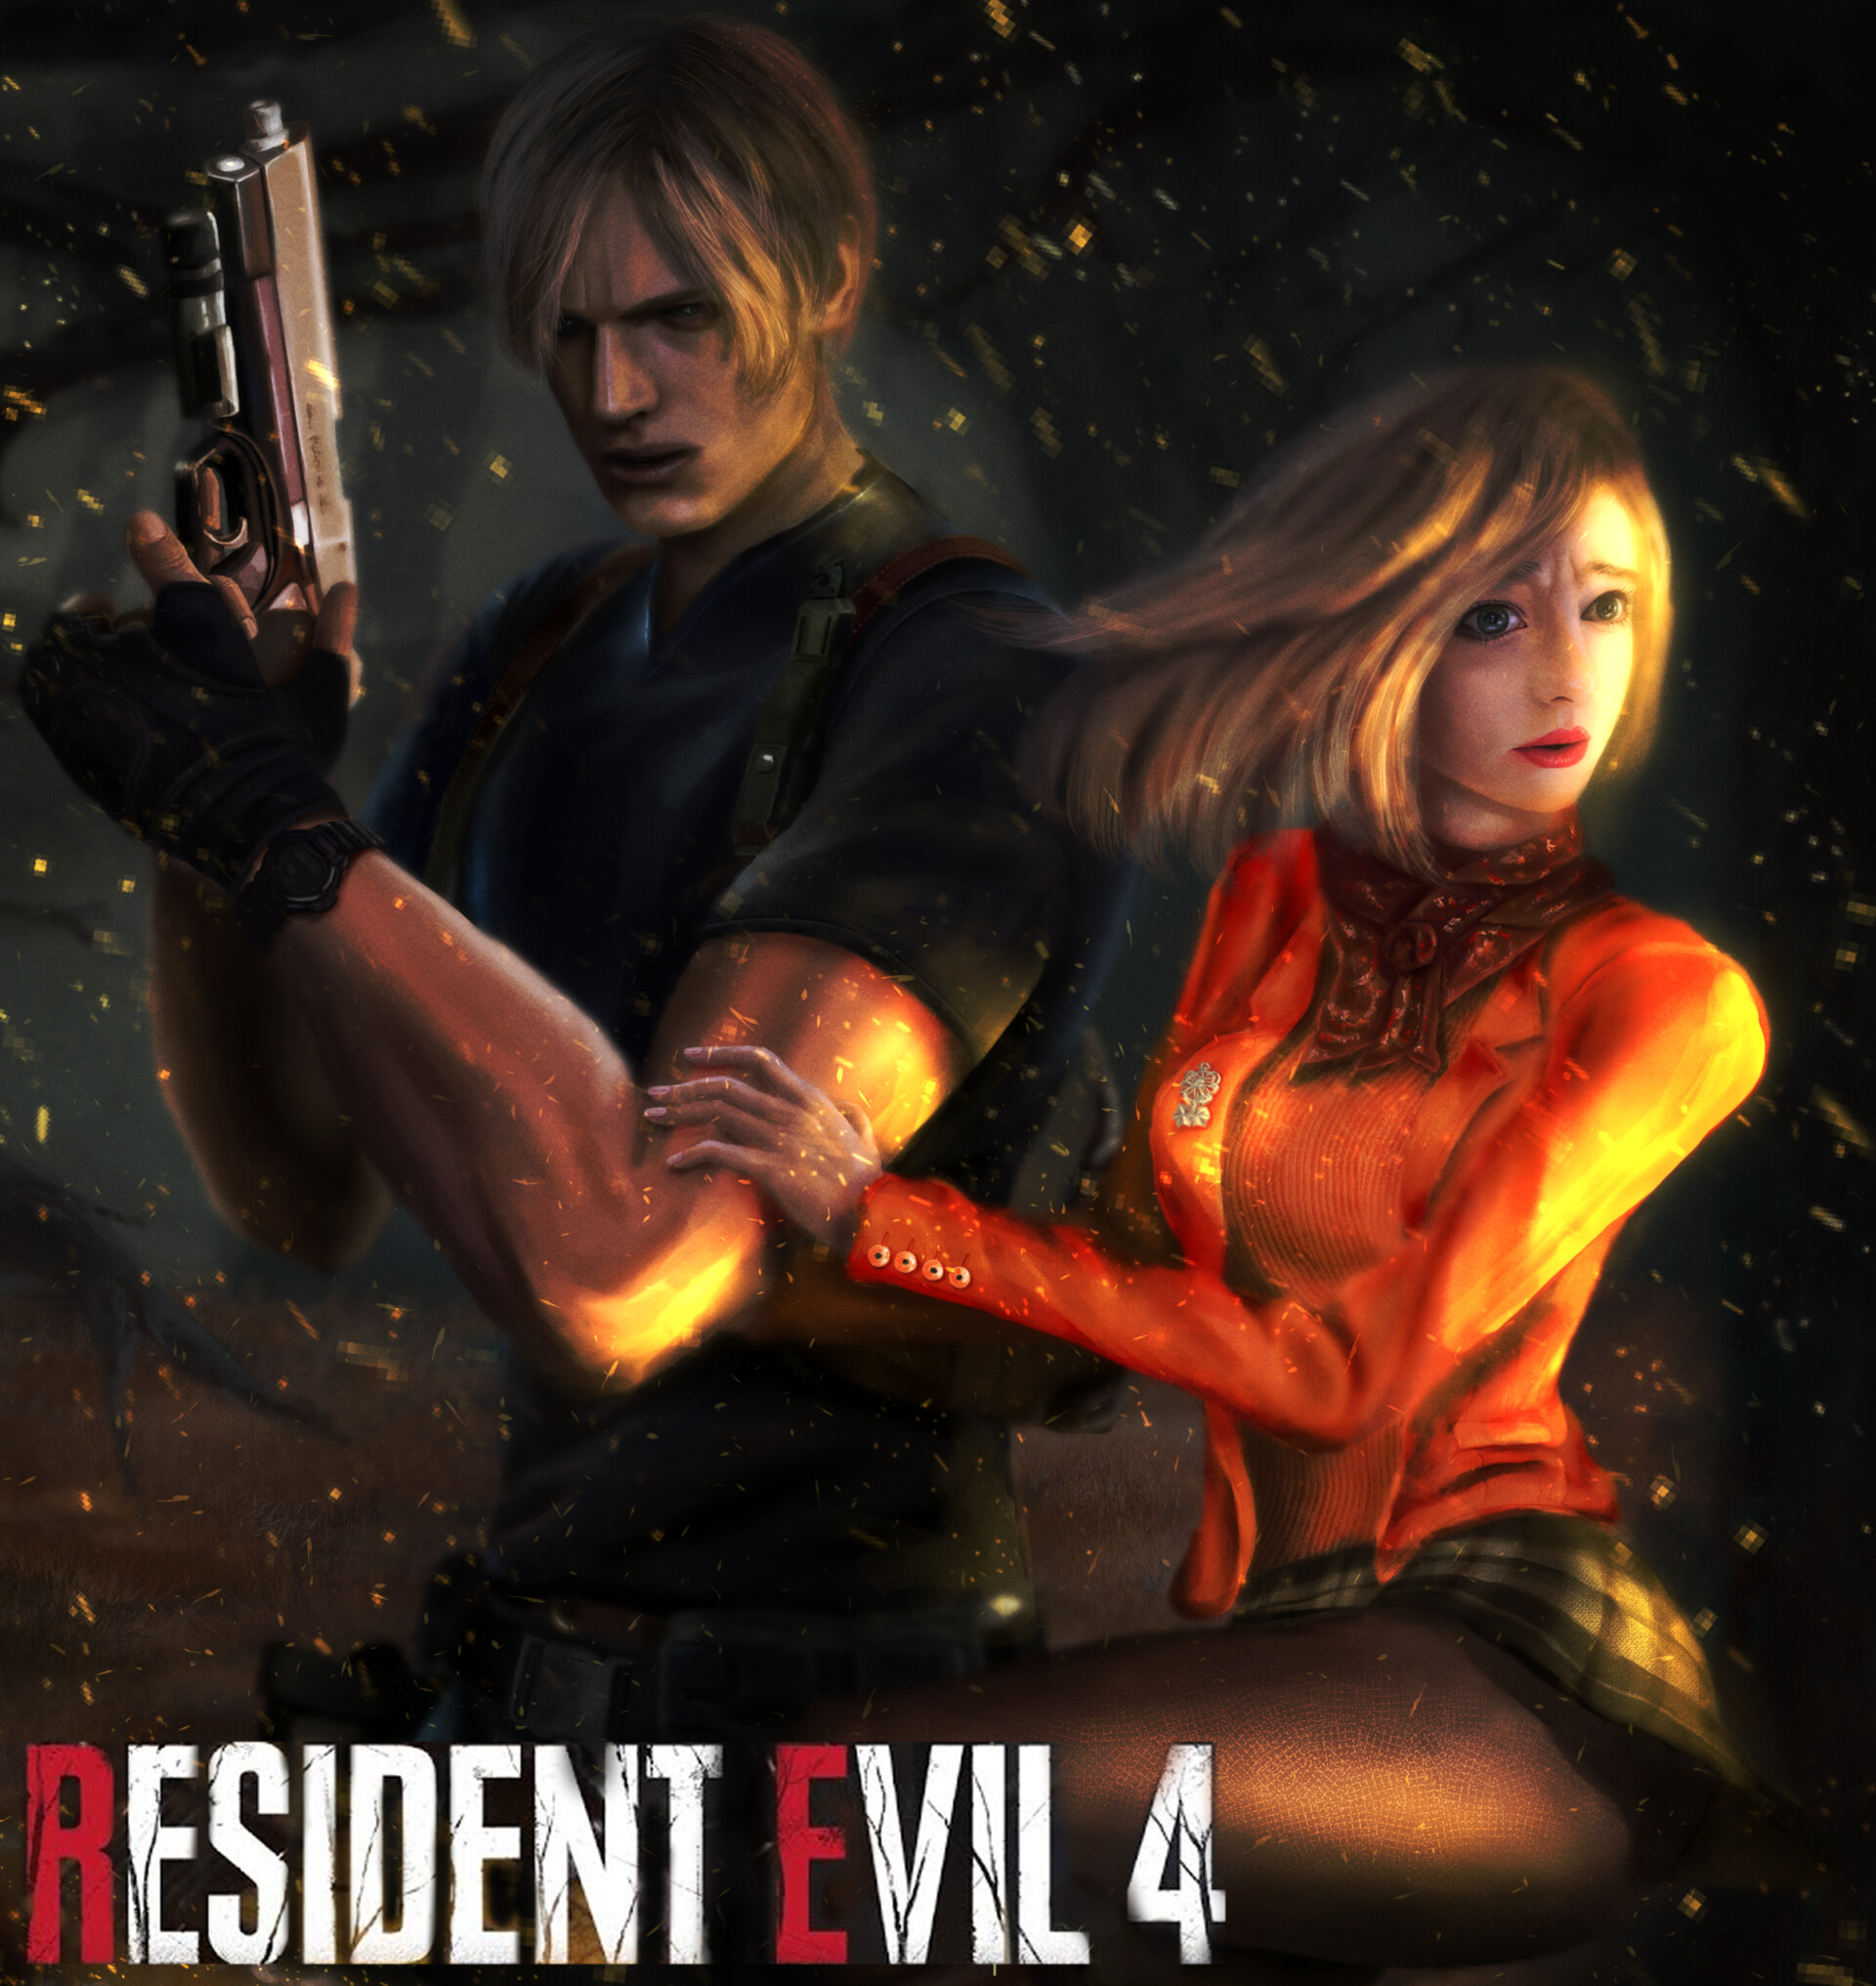 ArtStation - Fan art of Ashley Graham from Resident Evil 4 Remake